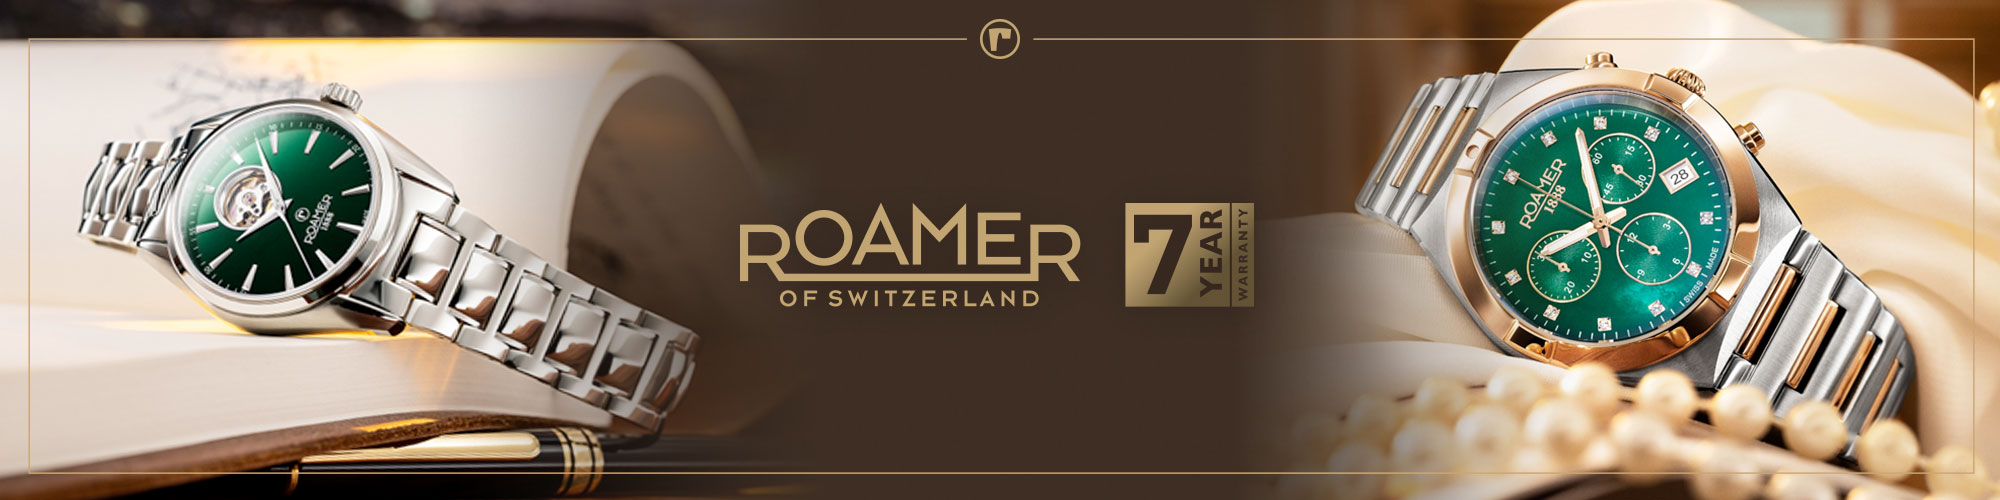 Roamer1